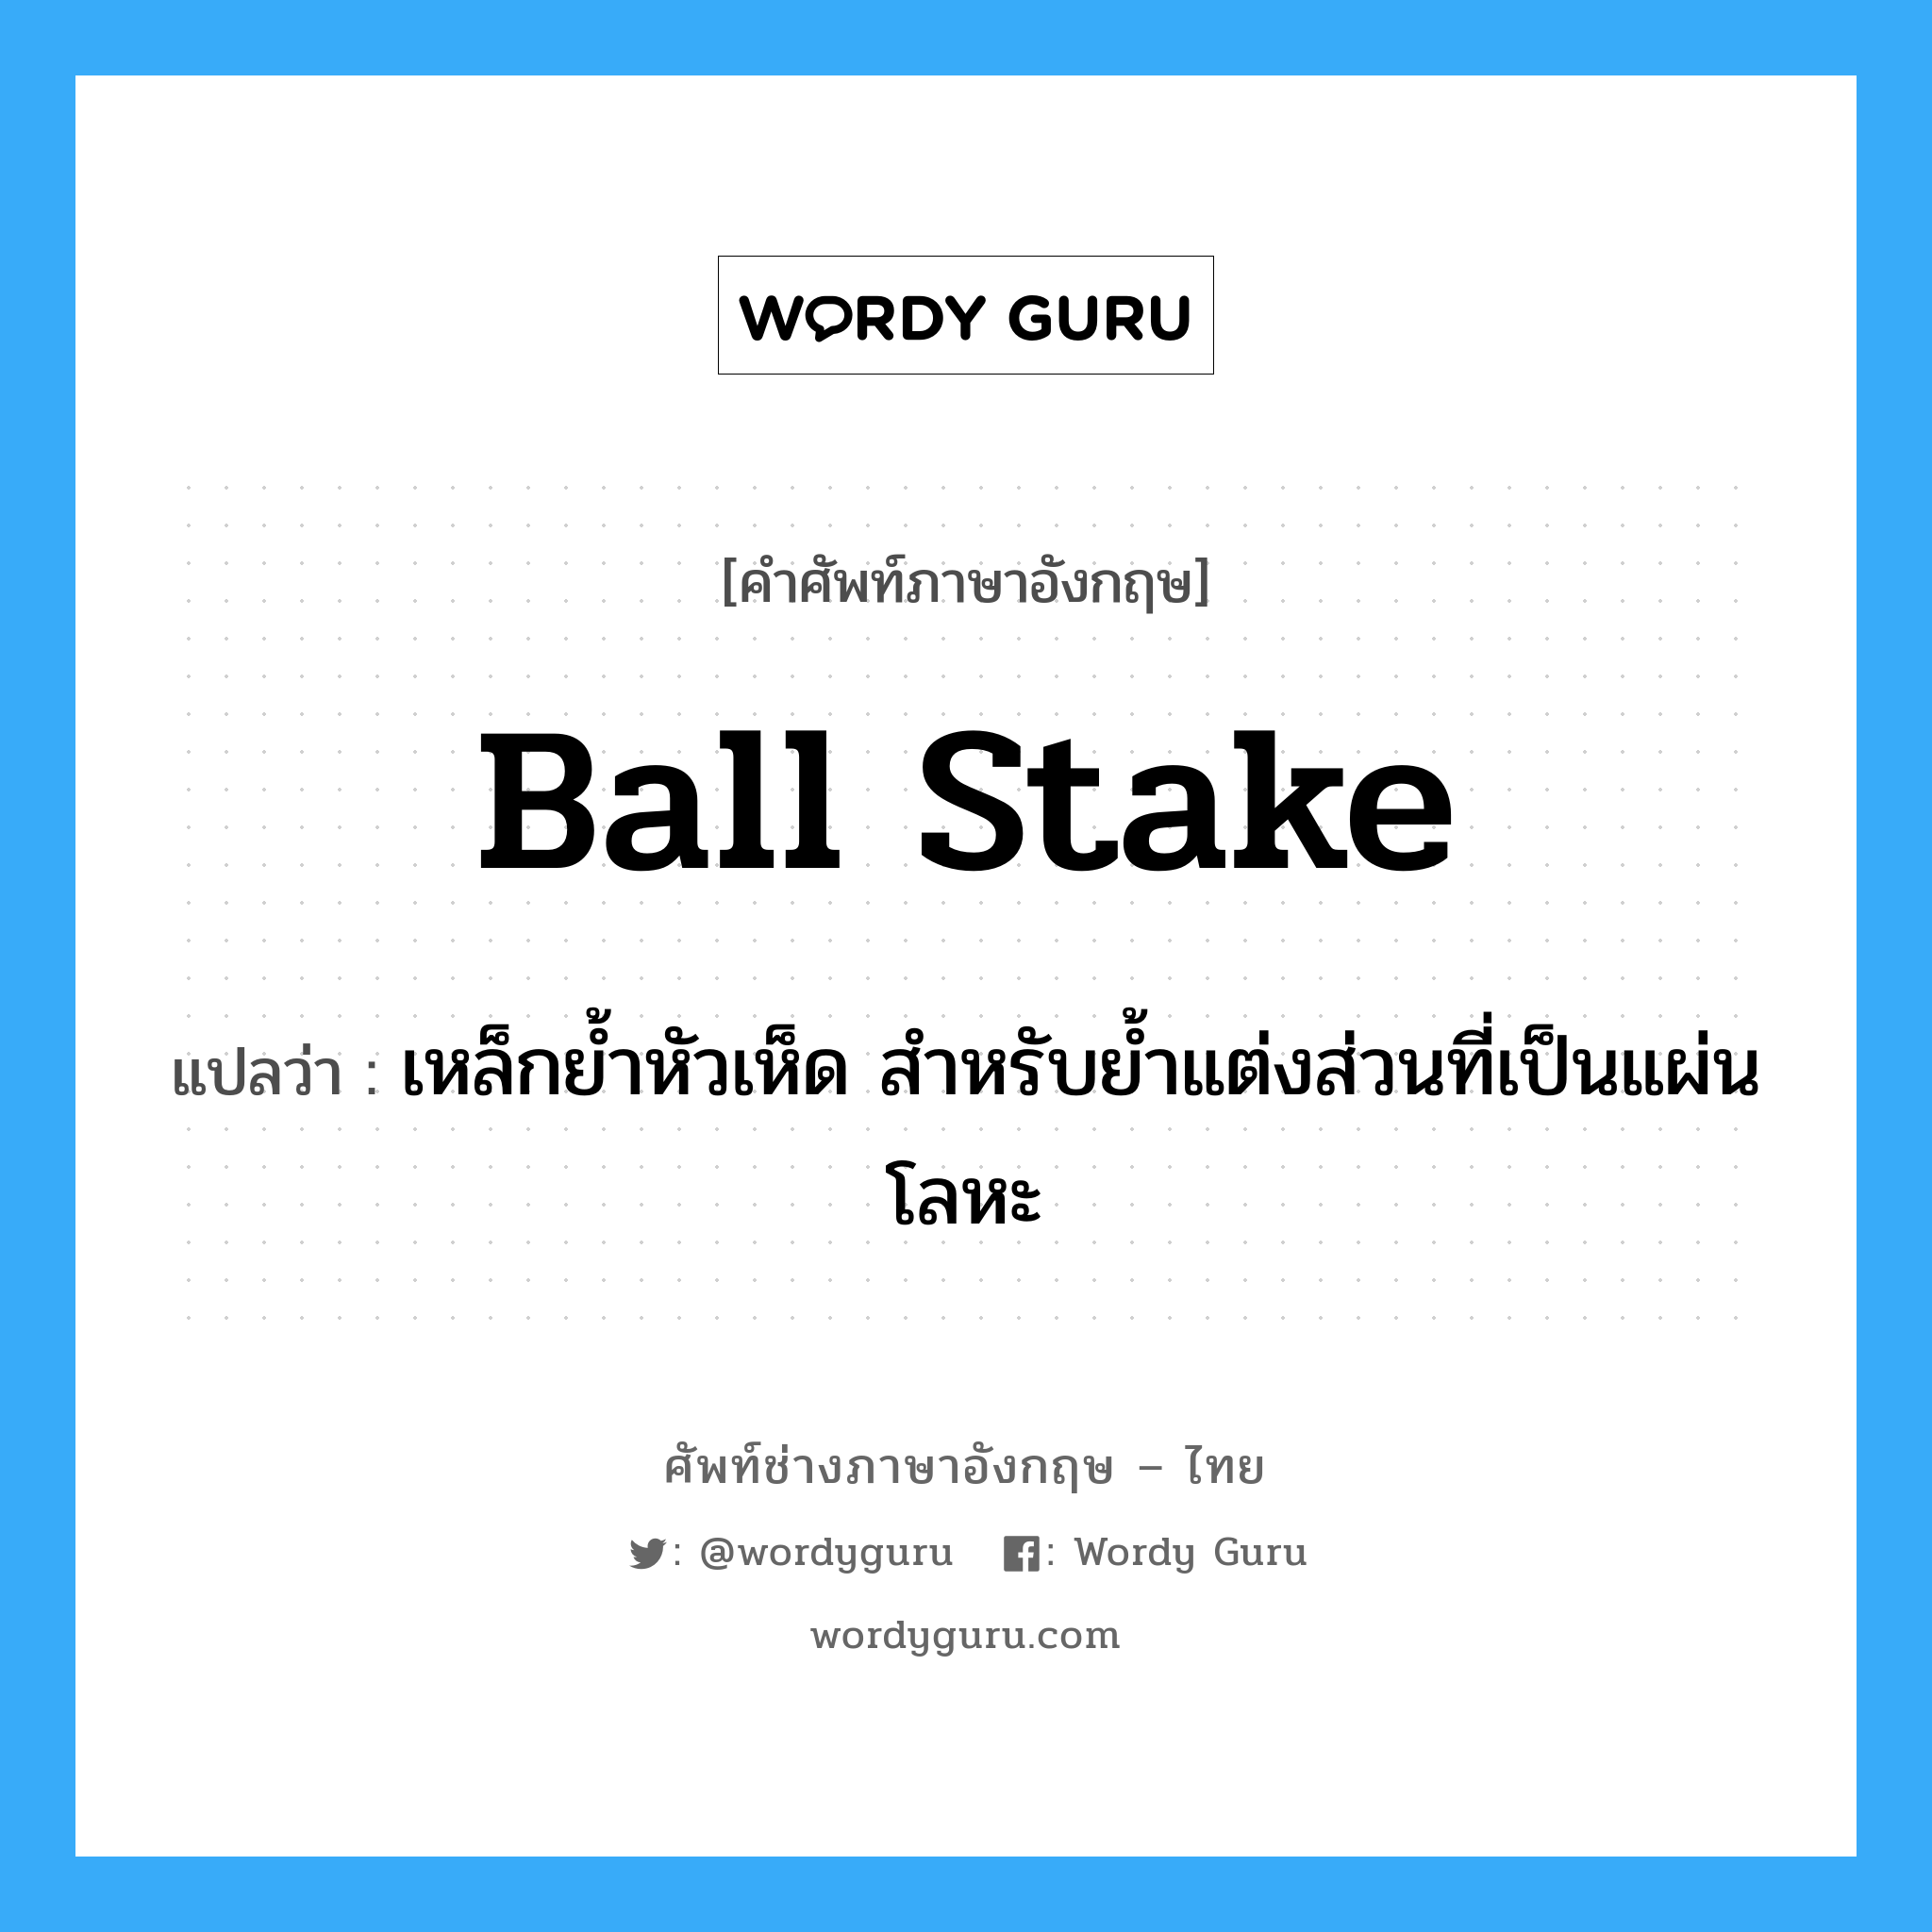 ball stake แปลว่า?, คำศัพท์ช่างภาษาอังกฤษ - ไทย ball stake คำศัพท์ภาษาอังกฤษ ball stake แปลว่า เหล็กย้ำหัวเห็ด สำหรับย้ำแต่งส่วนที่เป็นแผ่นโลหะ